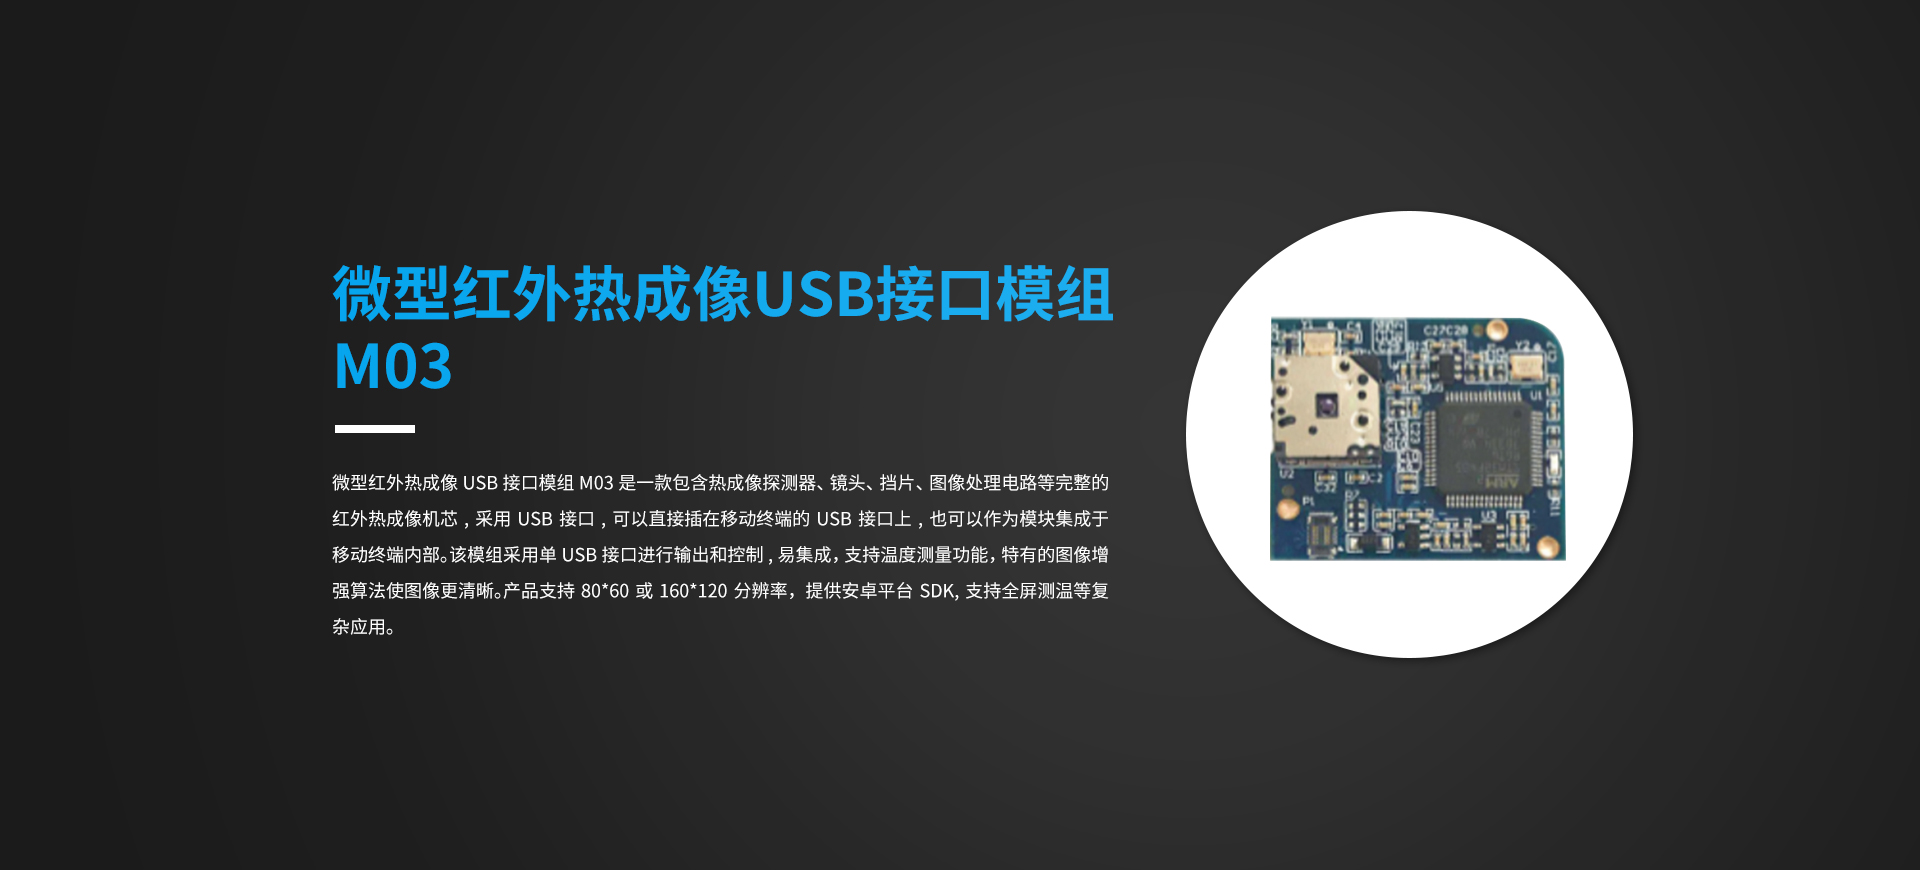 微型红外热成像USB接口模组M03